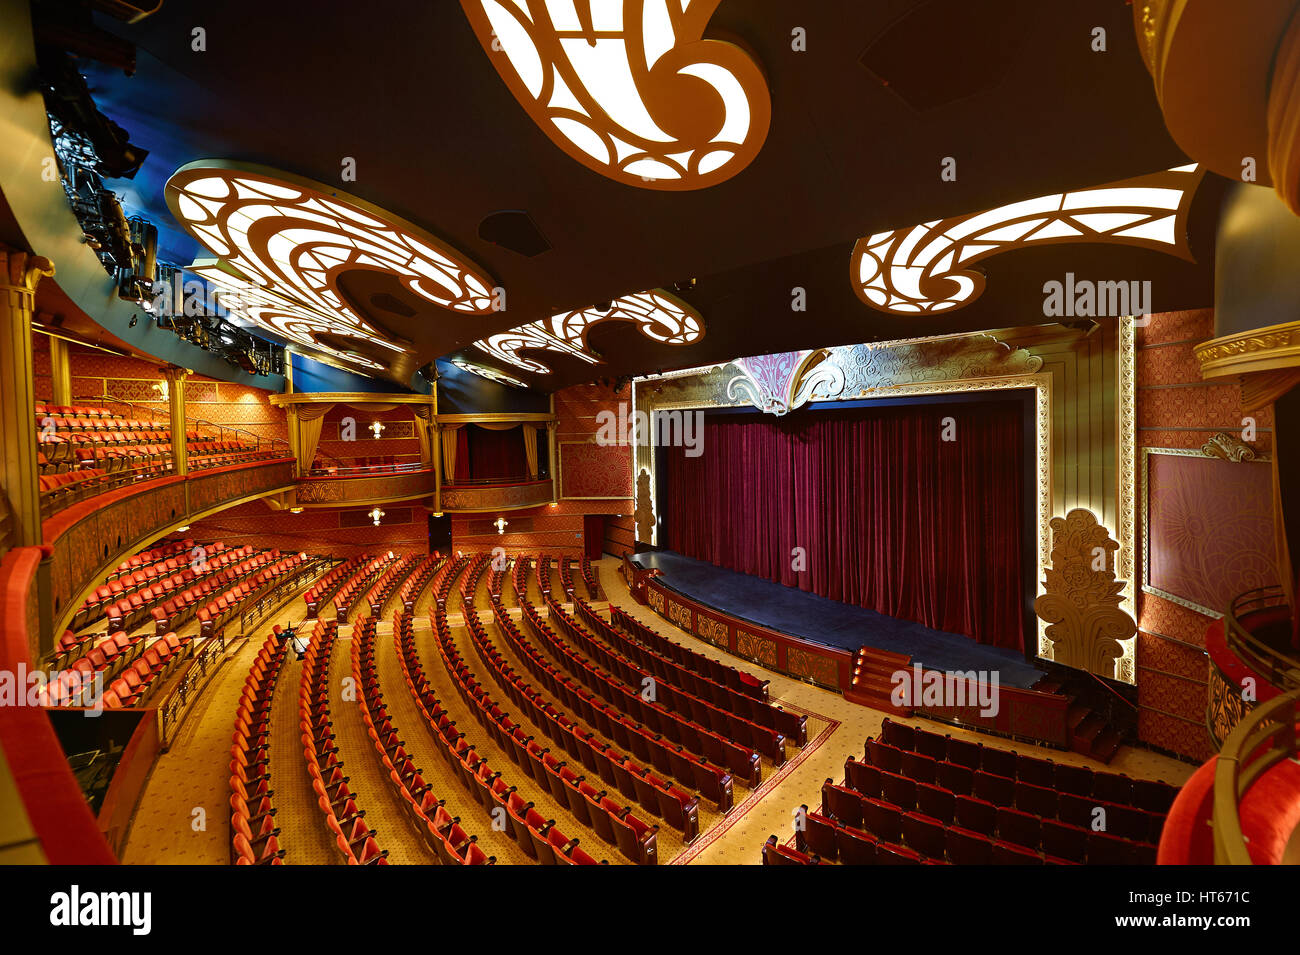 Orlando, USA - Le 27 avril 2015 : Théâtre à Disney Cruise Line navire. Intérieur du théâtre moderne et colorée Banque D'Images